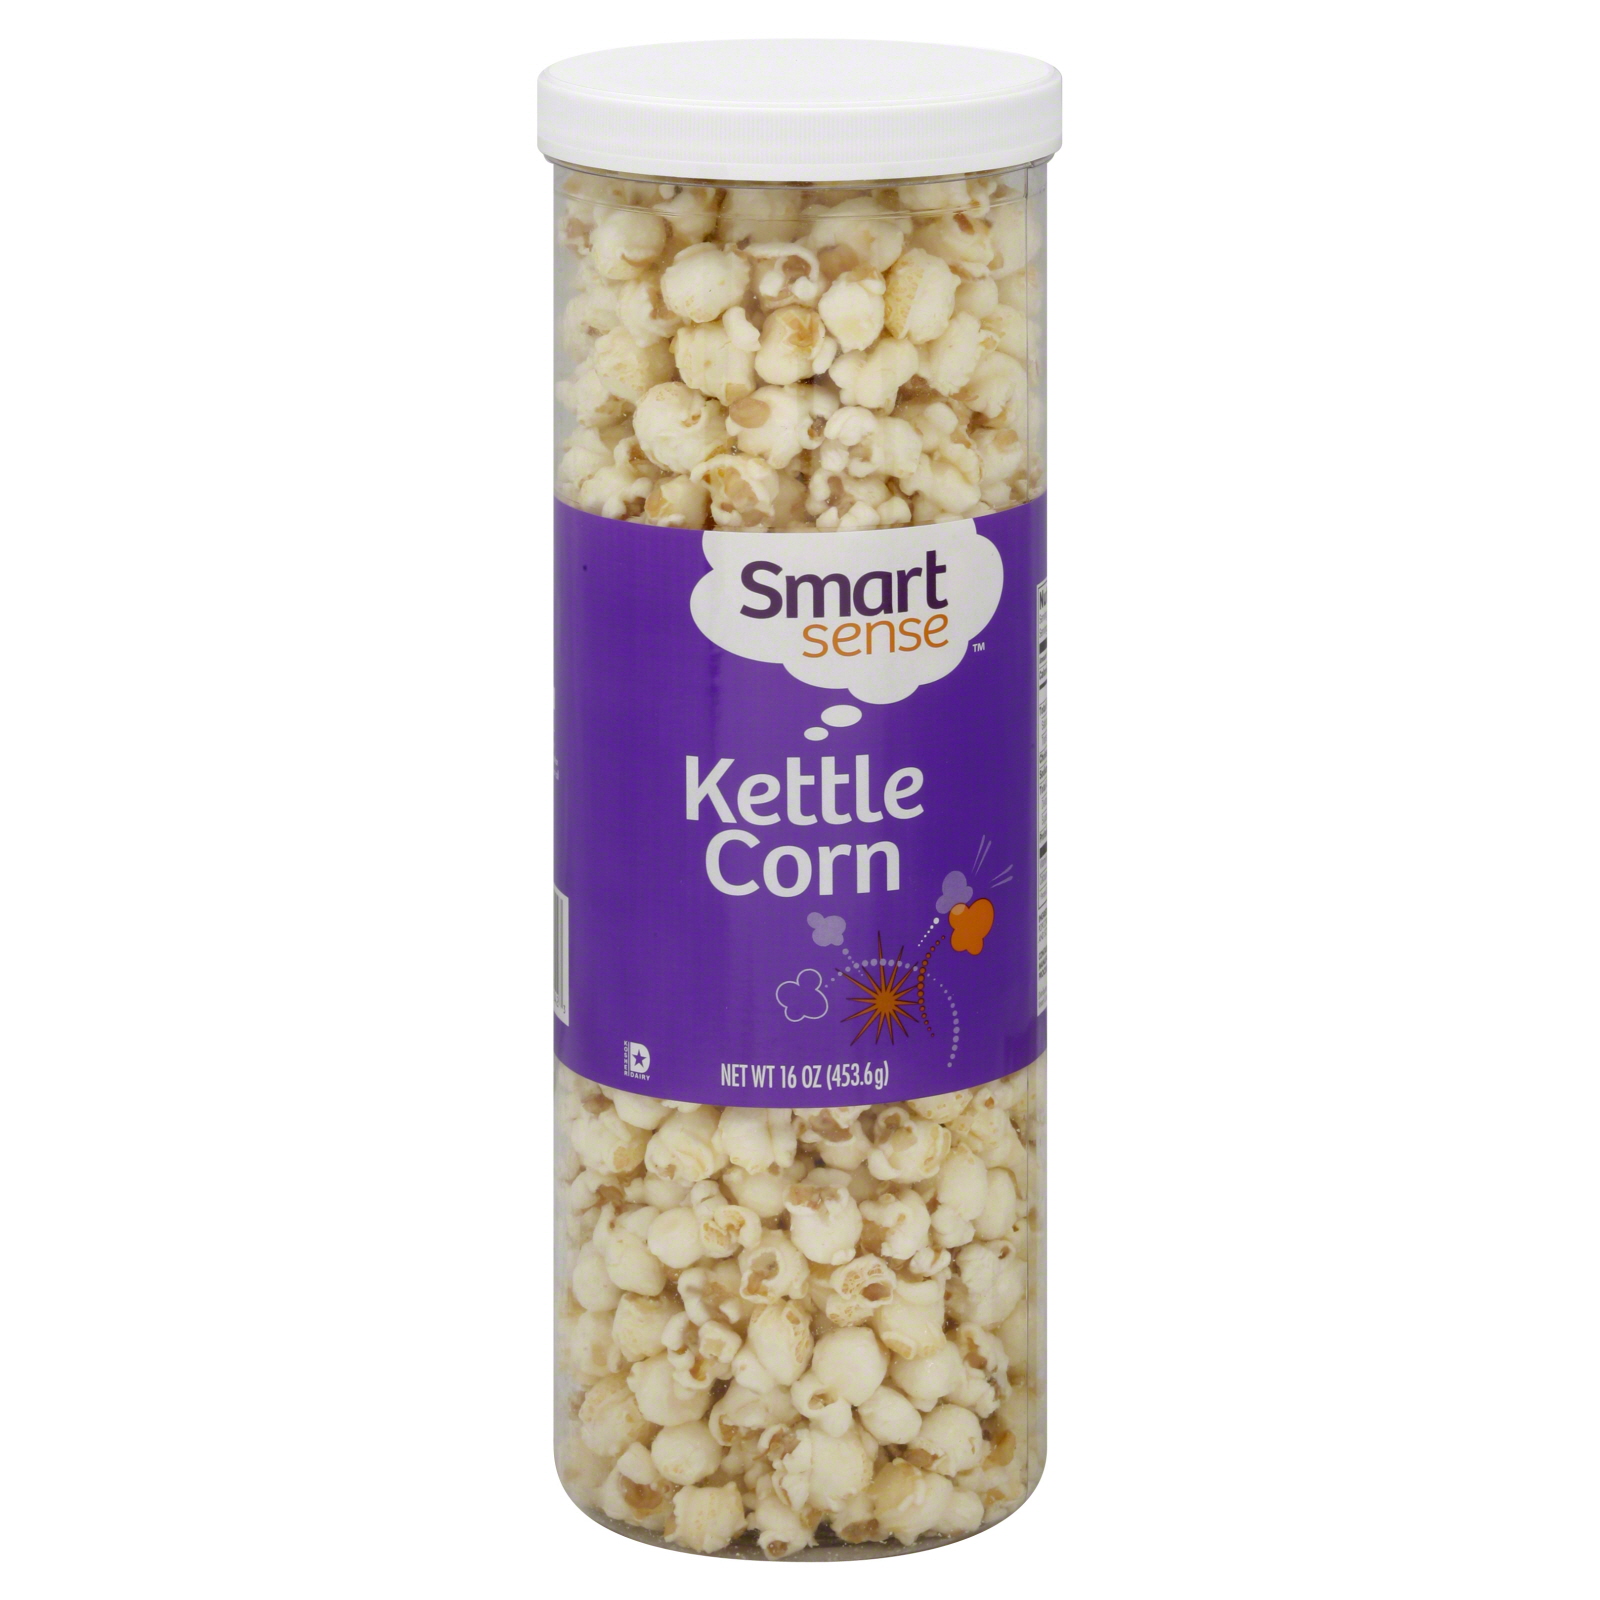 Smart Sense Kettle Corn, 16 oz (453.6 g)